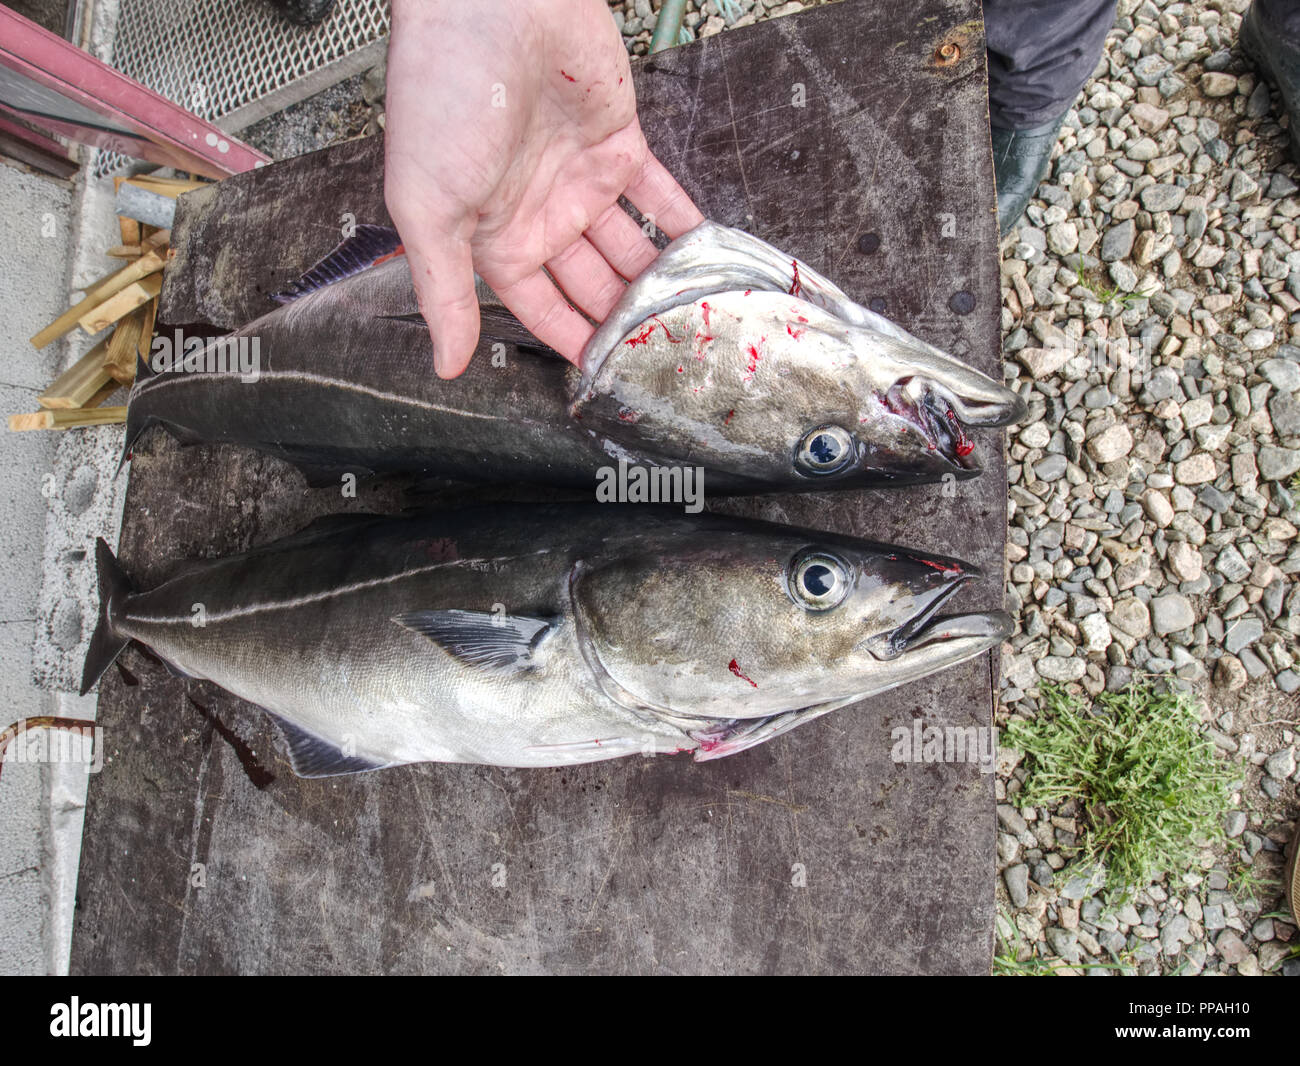 Big fresh trout fish or coalfish lying on cutting board. Fresh atlantic fish Stock Photo